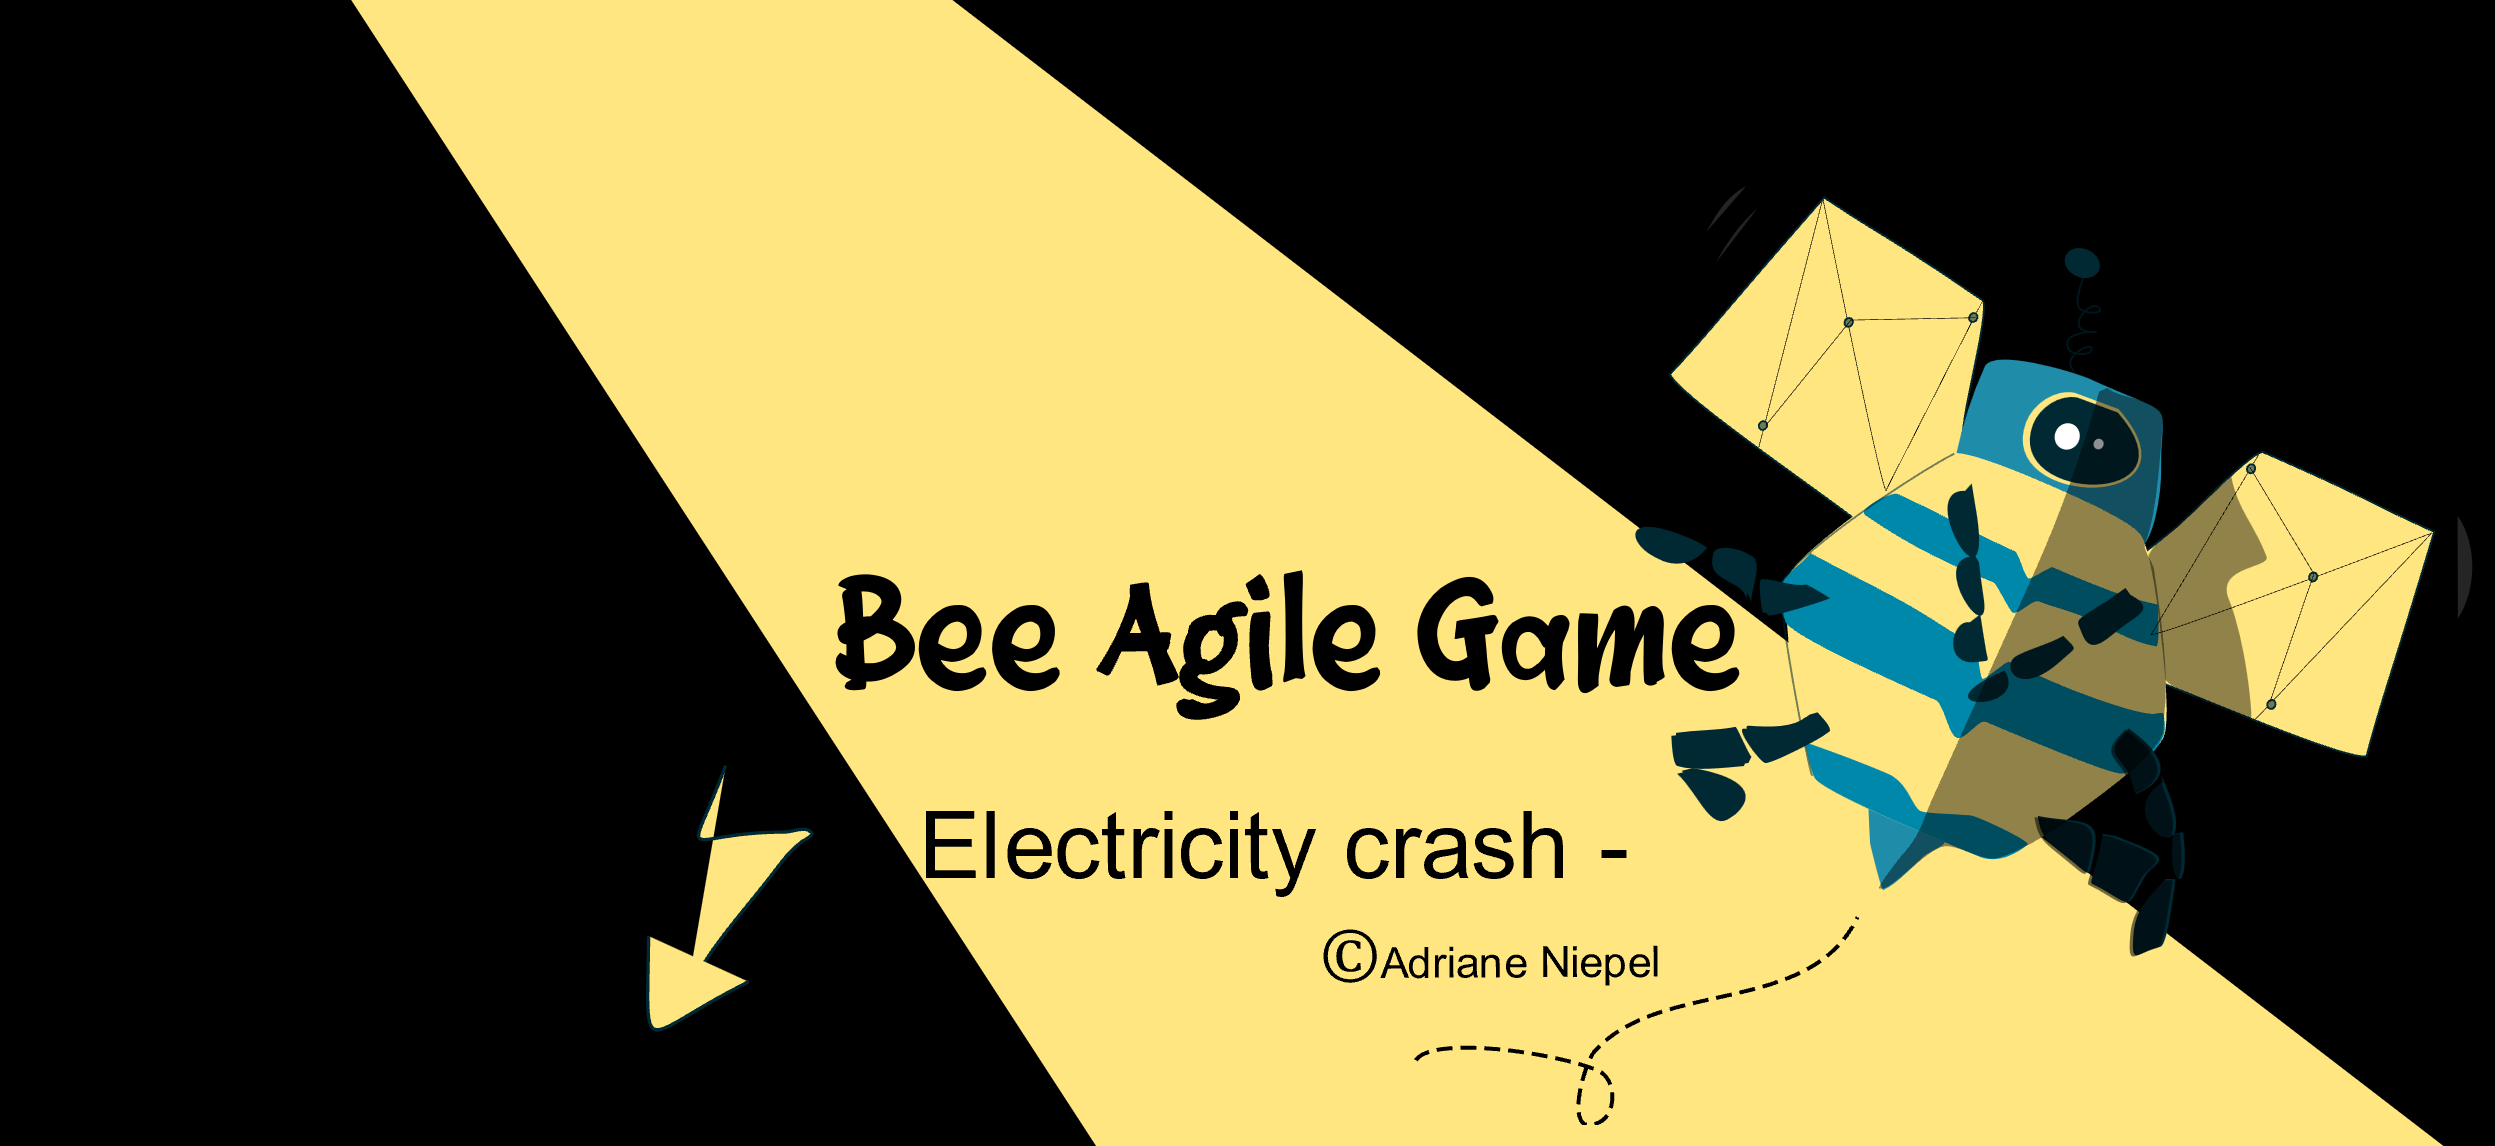 Bee agile Game